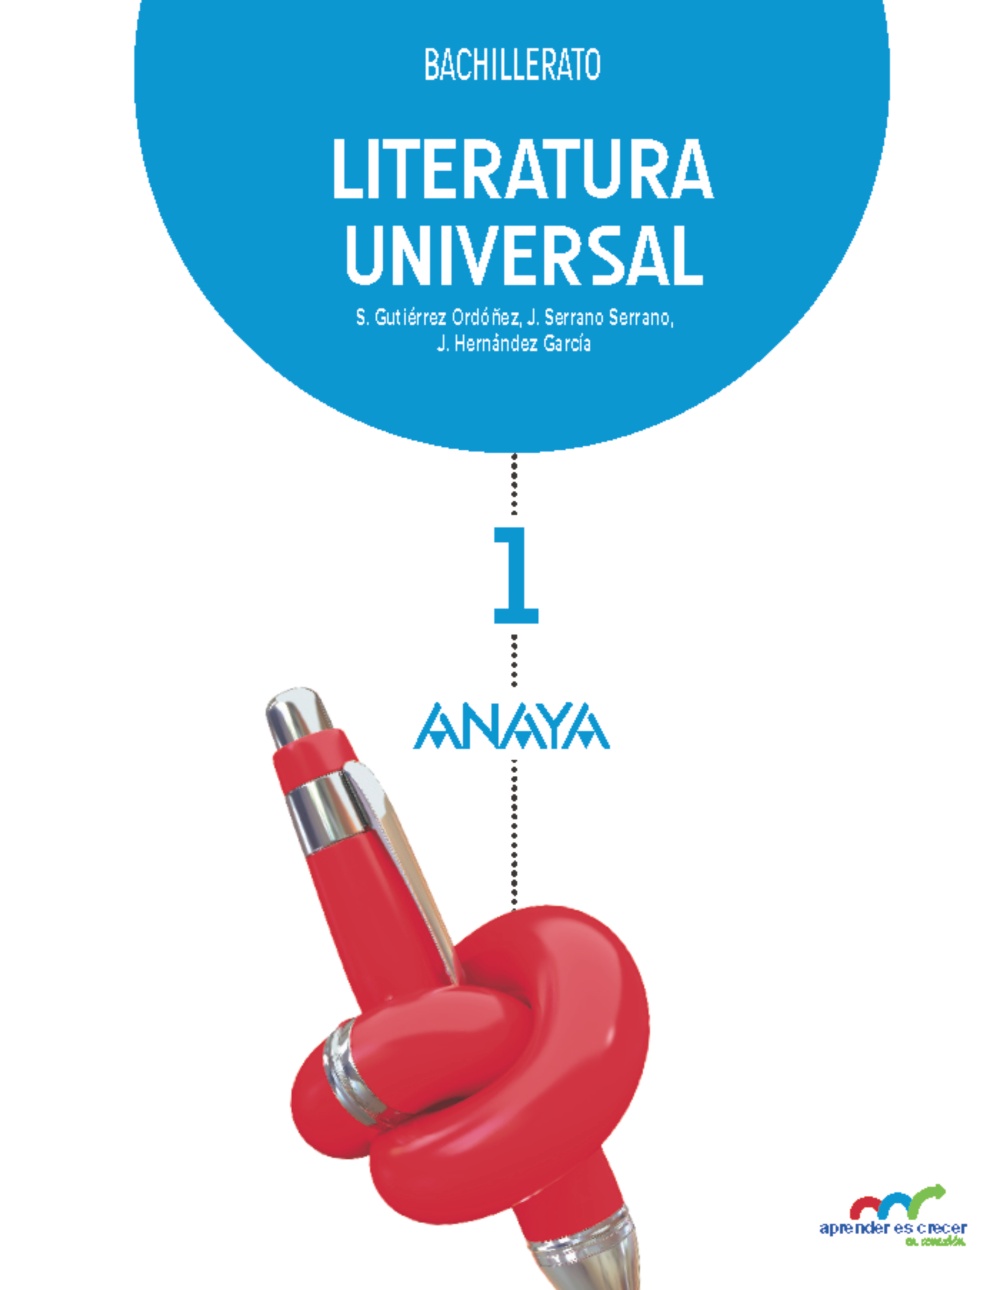 Solucionario Literatura Universal 1 Bachillerato Anaya Aprender es Crecer Soluciones PDF-pdf